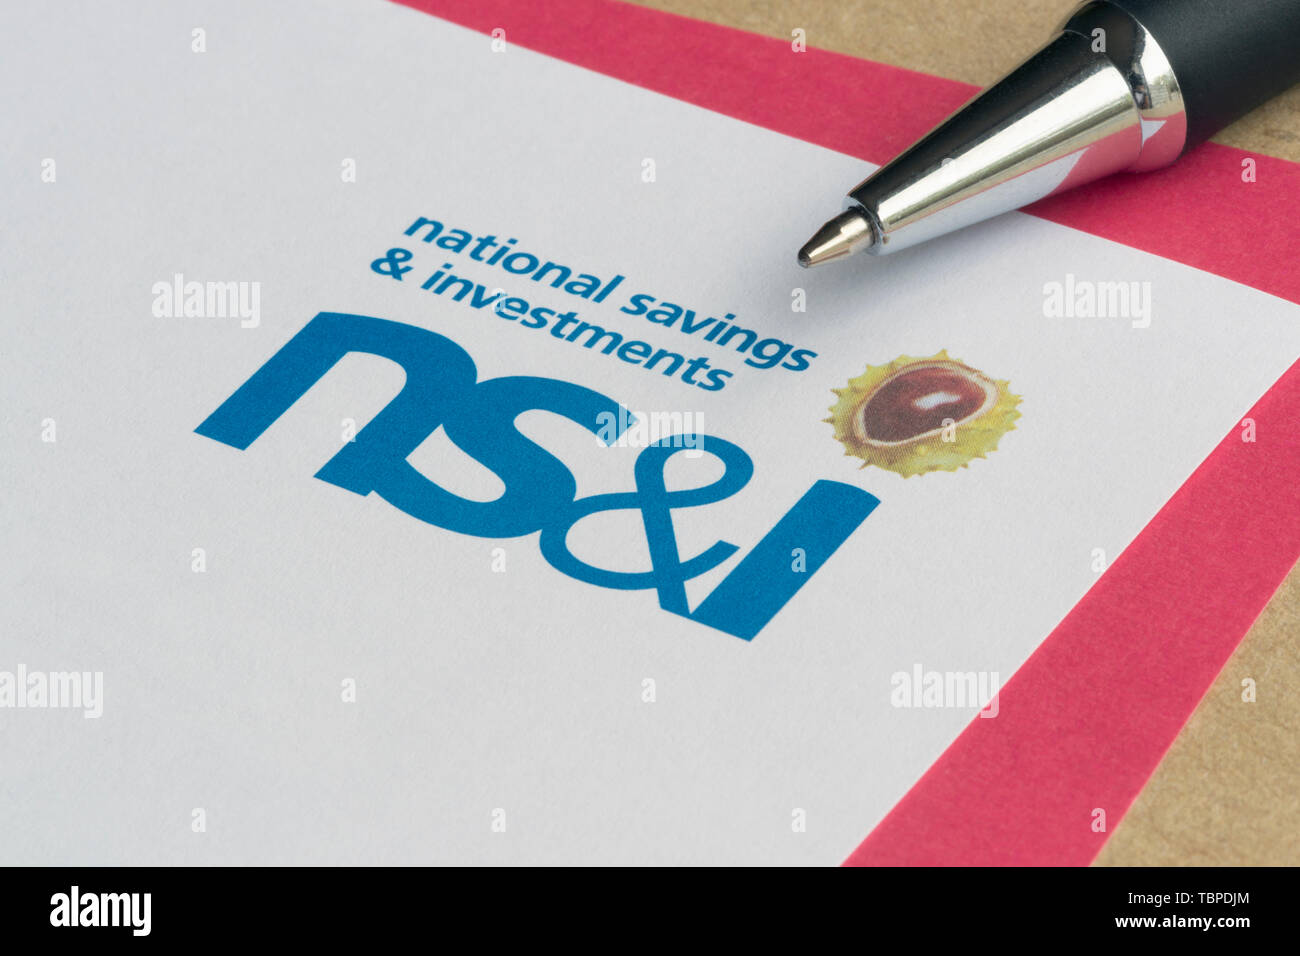 Ein Formular verwendet, NS & ich Premium Bonds zusammen mit einem Umschlag und Stift zu kaufen. Stockfoto